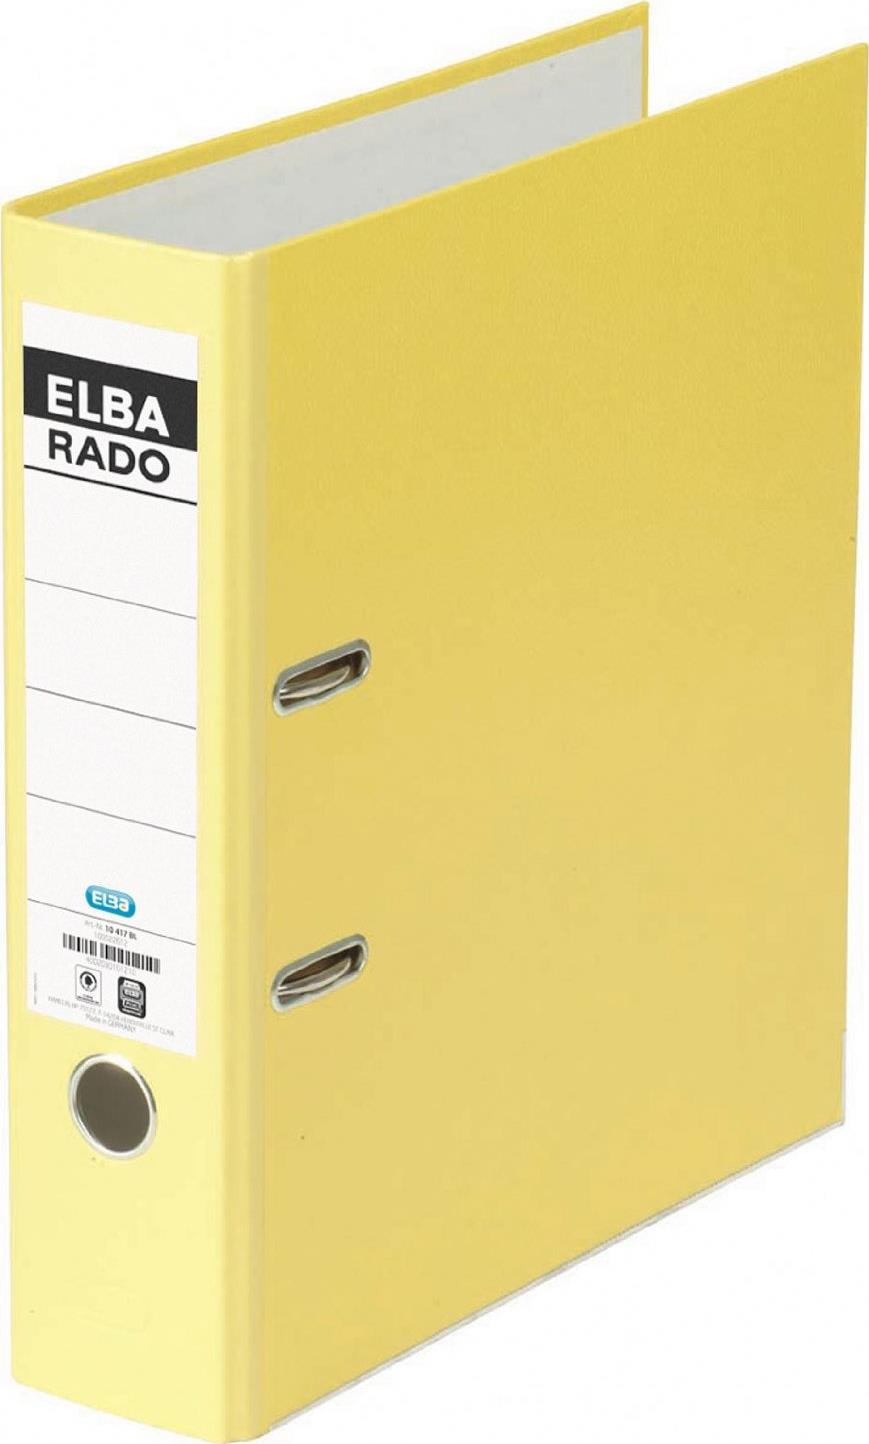 HAMELIN ELBA Ordner rado brillant, Rückenbreite: 80 mm, gelb DIN A4, Einband außen / innen aus Acryl